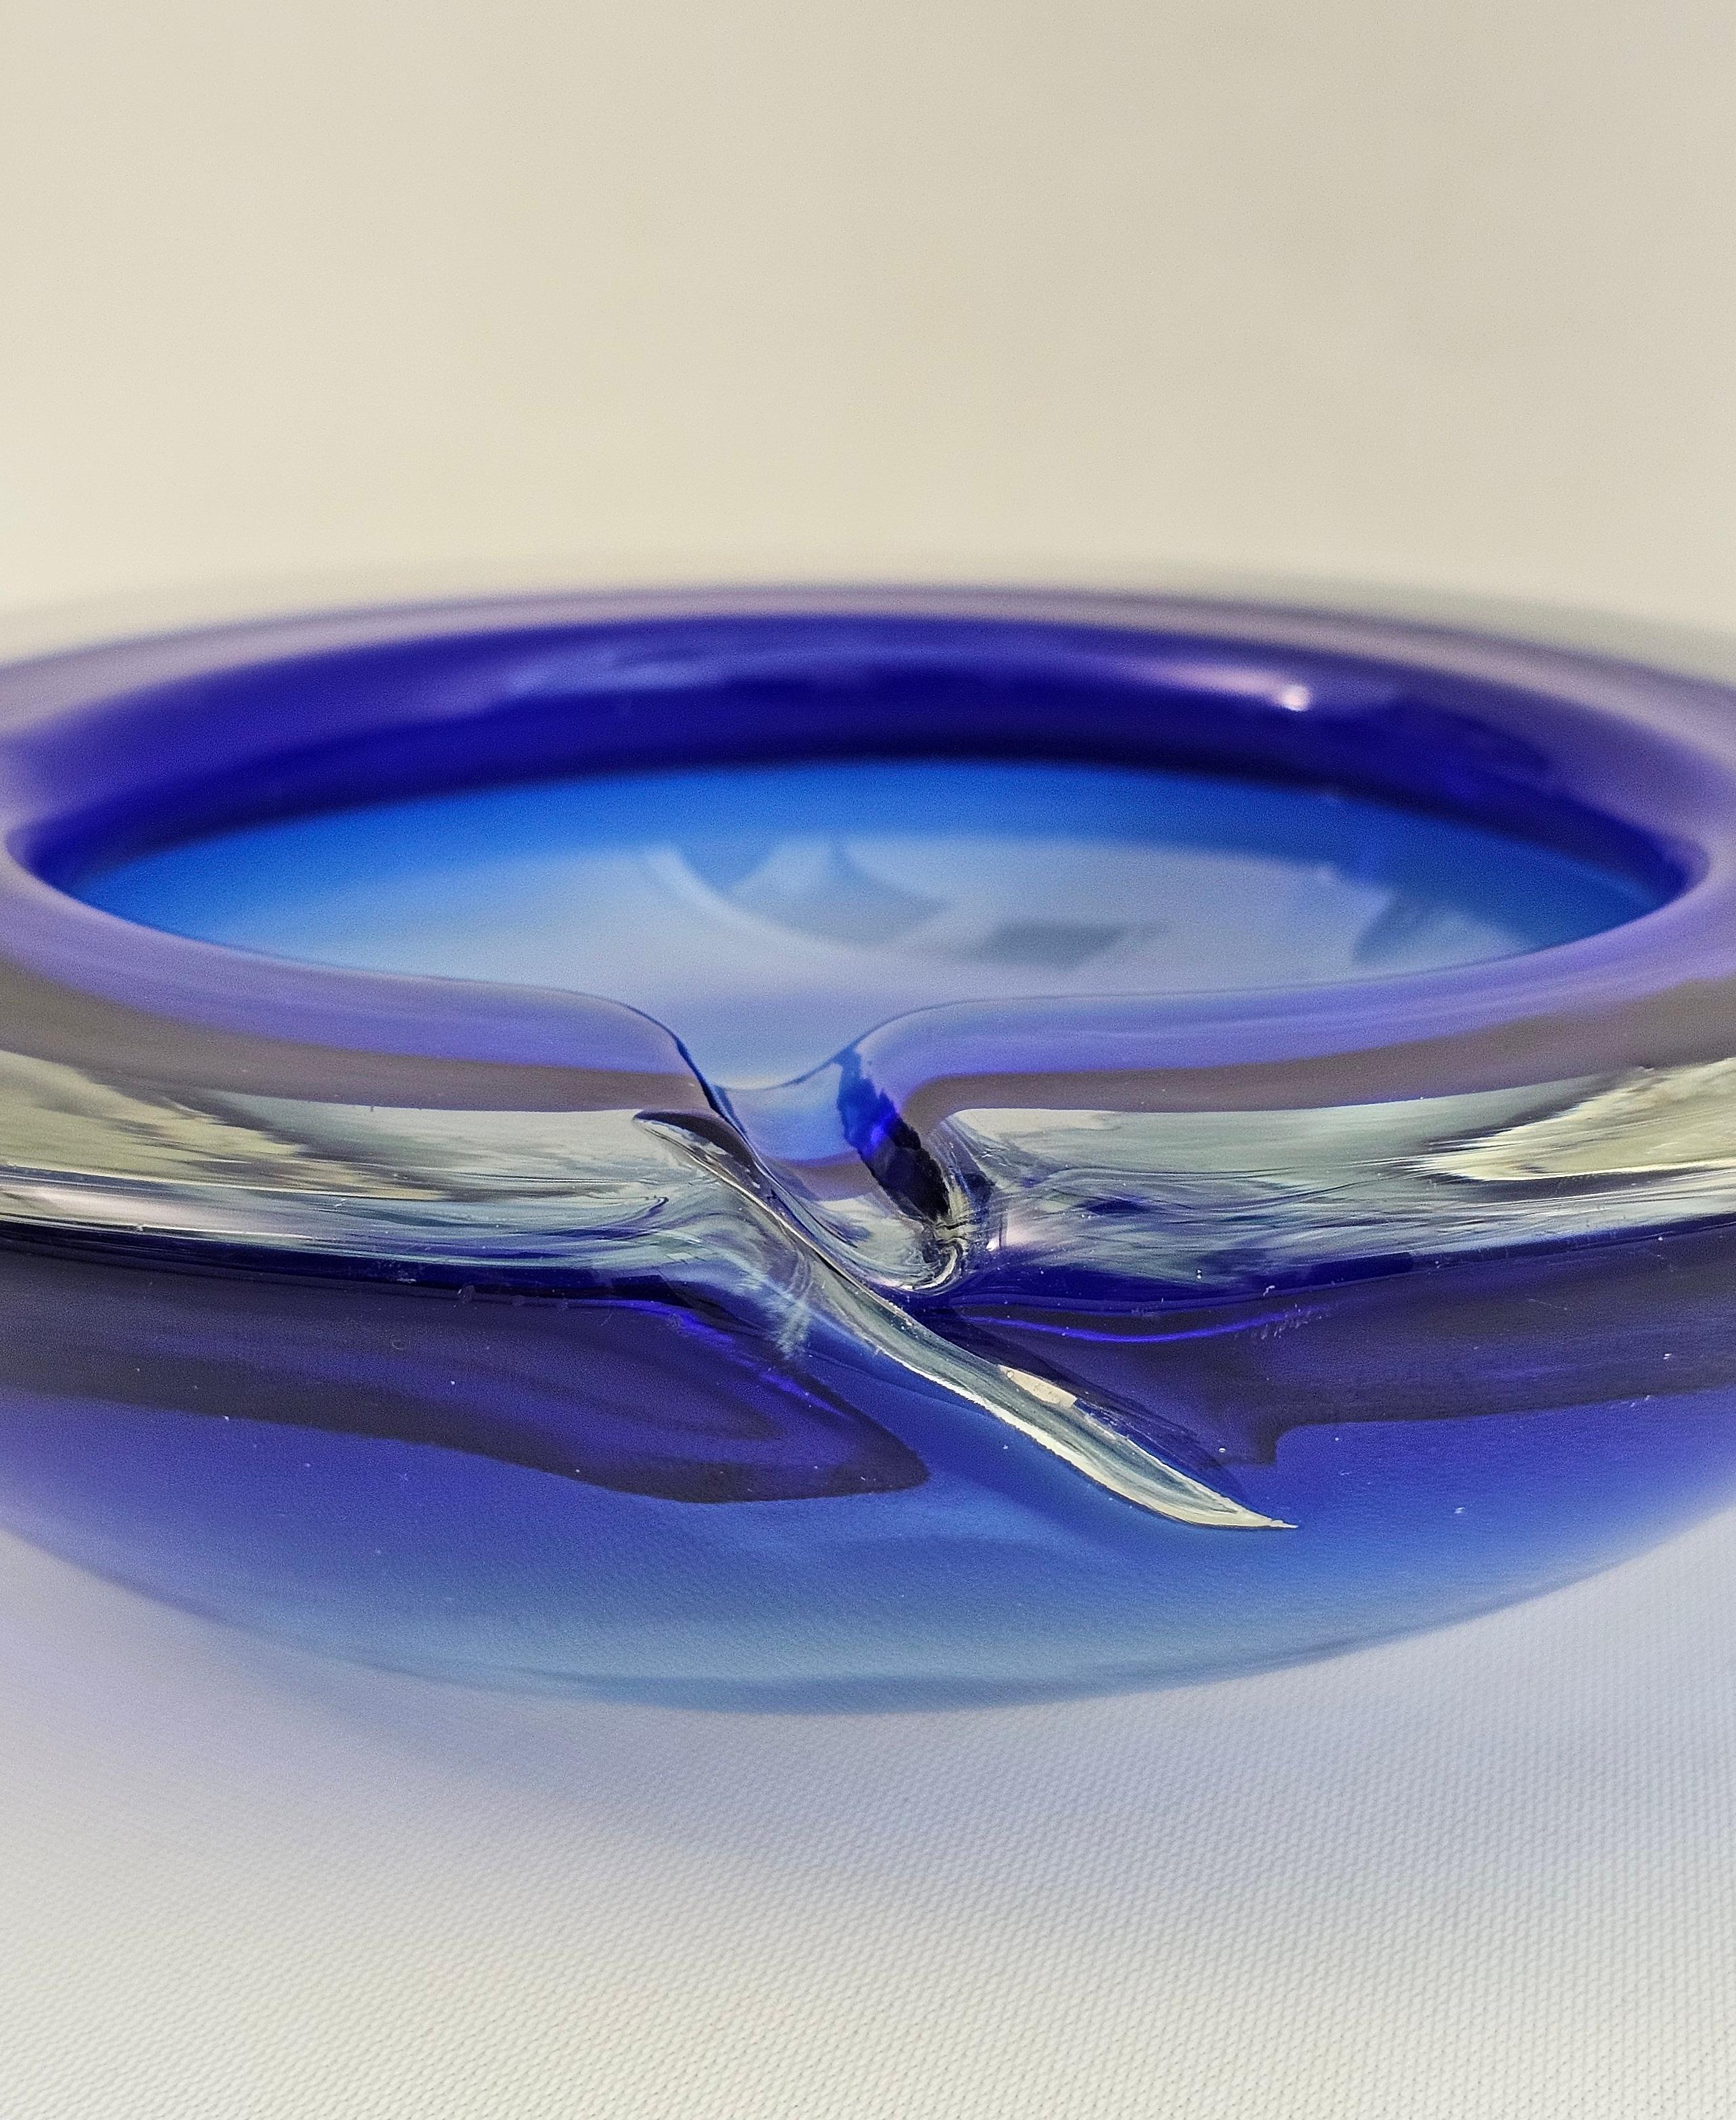 Imposanter kreisförmiger Aschenbecher aus sehr dickem Murano-Glas, in elektischen Blau- und Transparenttönen. Ich hebe die hervorragende Qualität und Verarbeitung des Glases hervor. Hergestellt in Italien in den 60er Jahren.



Hinweis: Wir bemühen